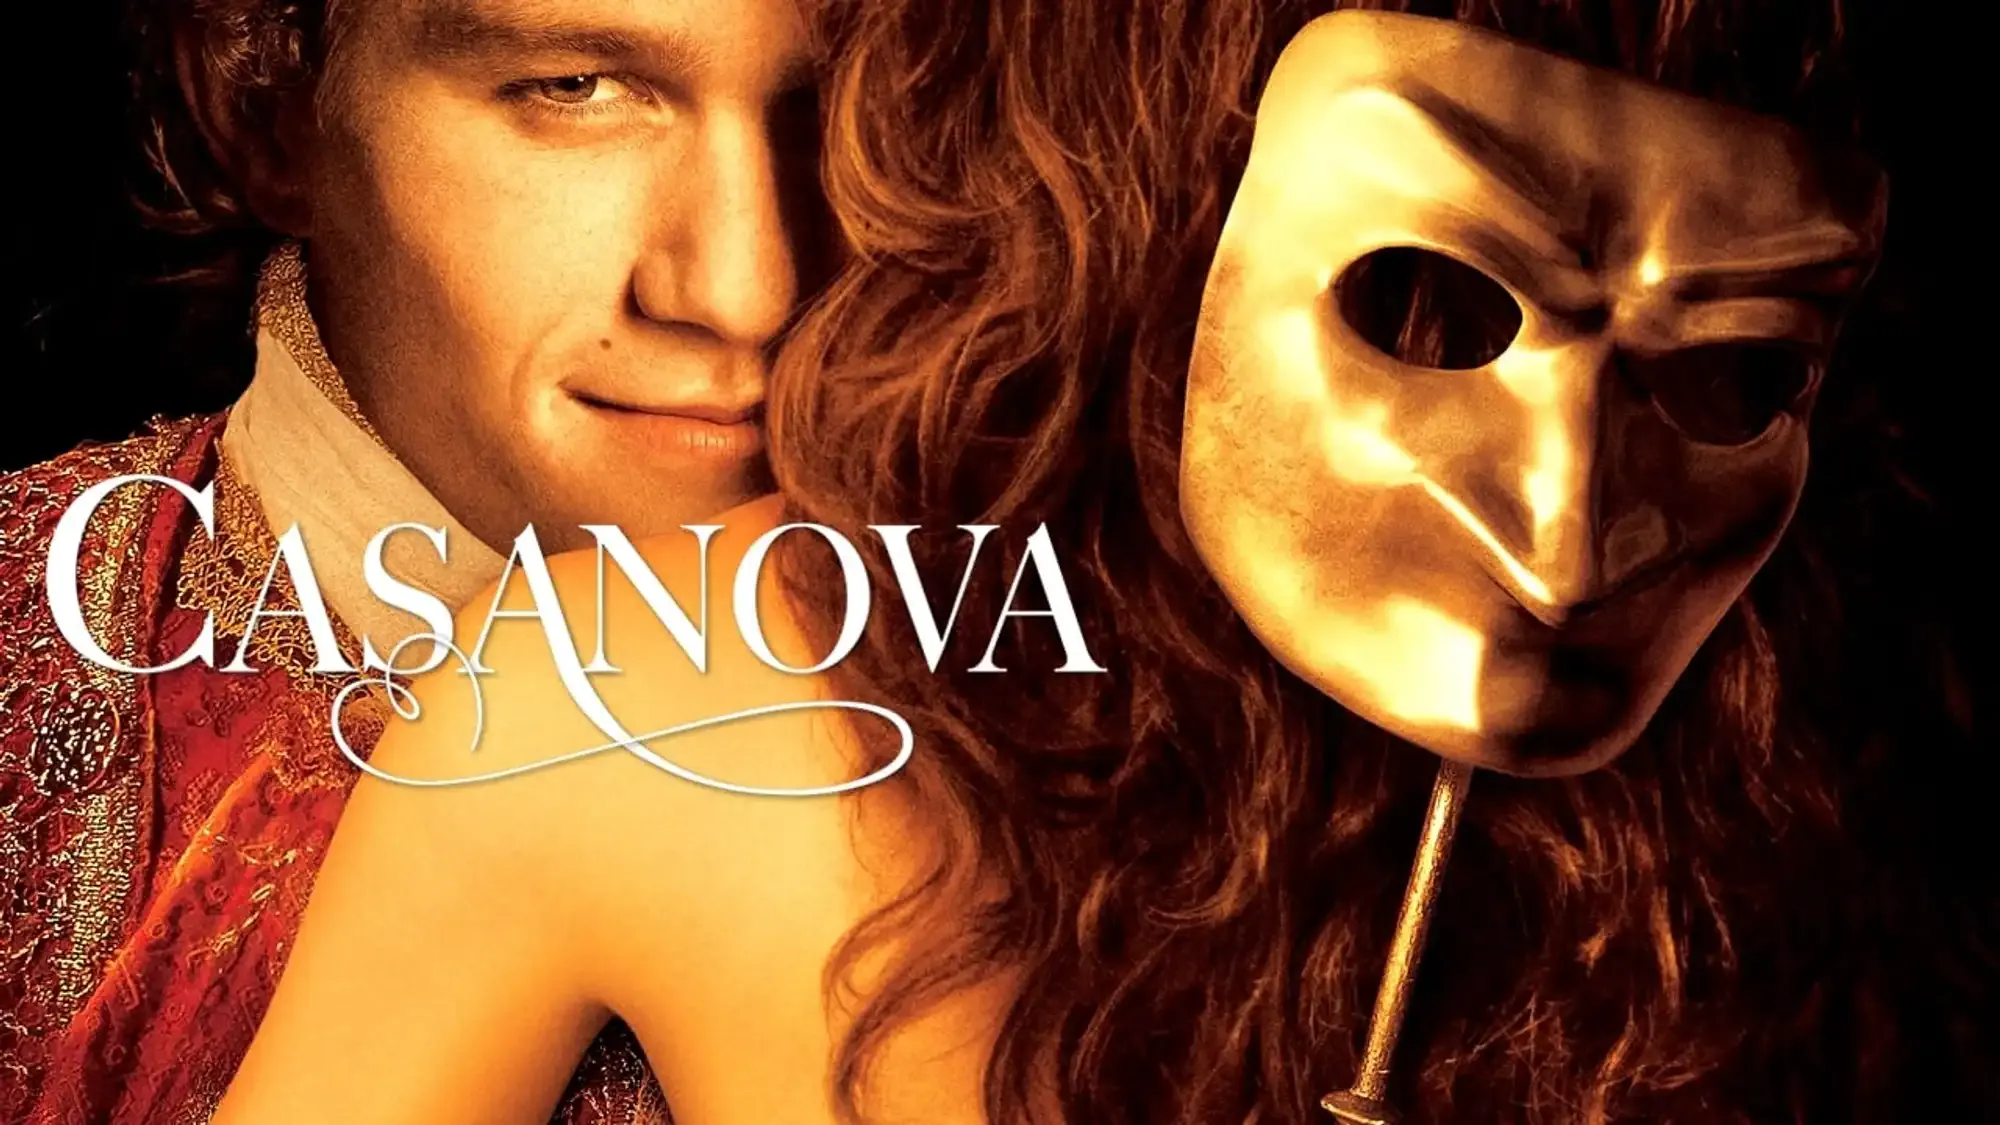 Casanova movie review